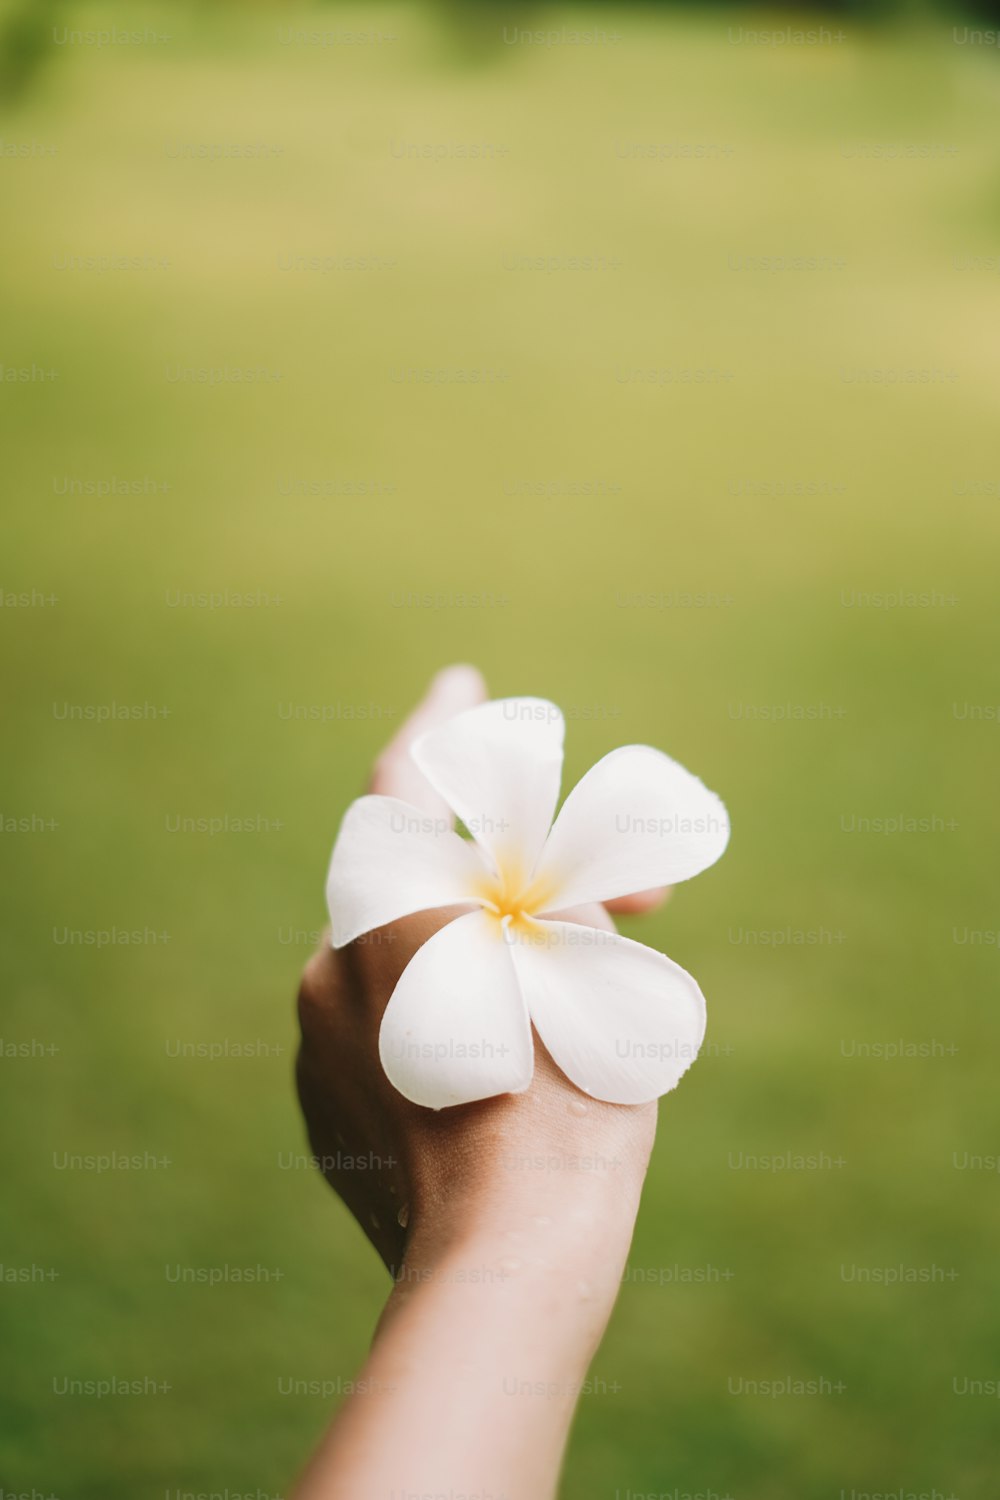 una persona sosteniendo una flor blanca en la mano